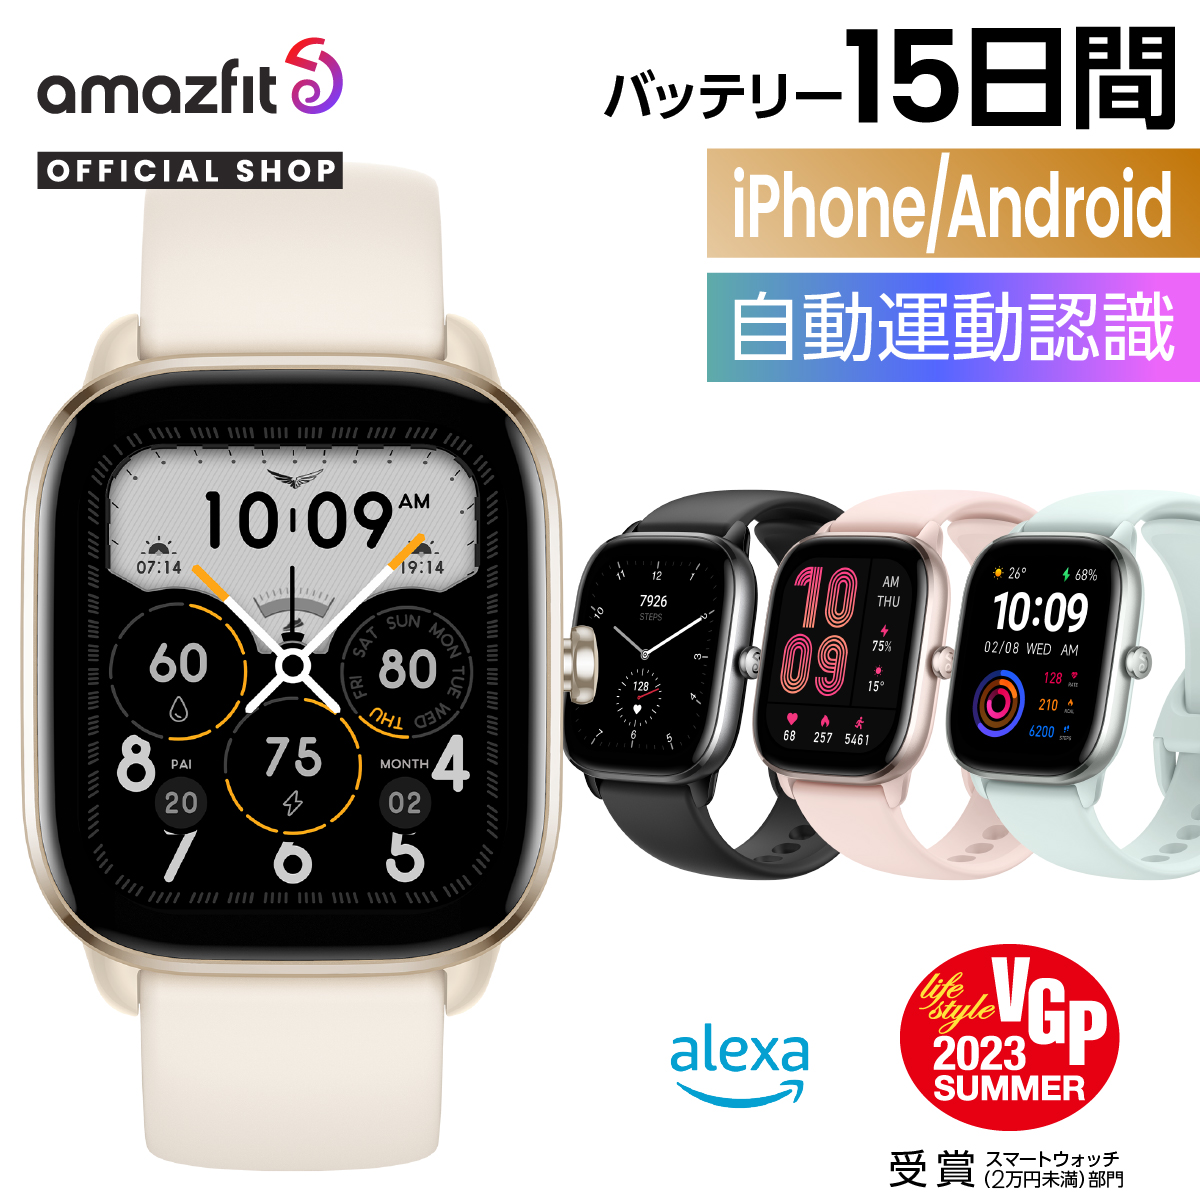 スマートウォッチ Amazfit GTS 4 Mini アマズフィット 日本正規代理店 アイフォン アンドロイド 対応 LINE通知 着信通知 軽い